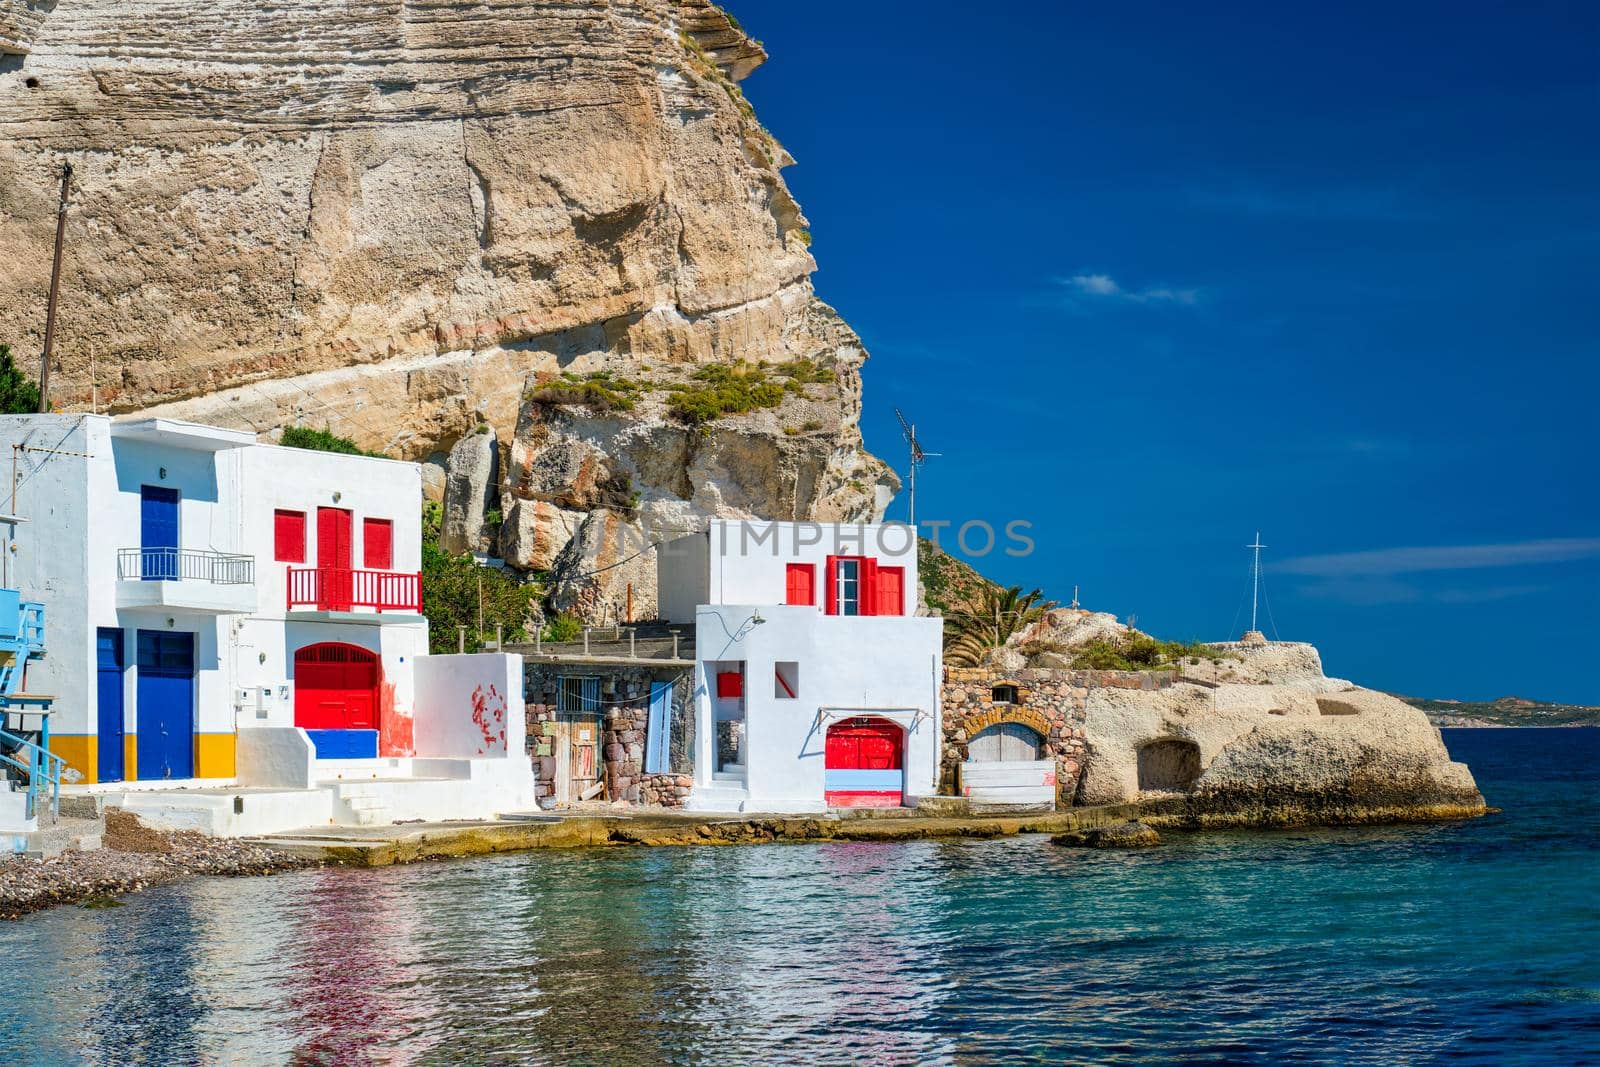 Greek fishing village Klima on Milos island in Greece by dimol